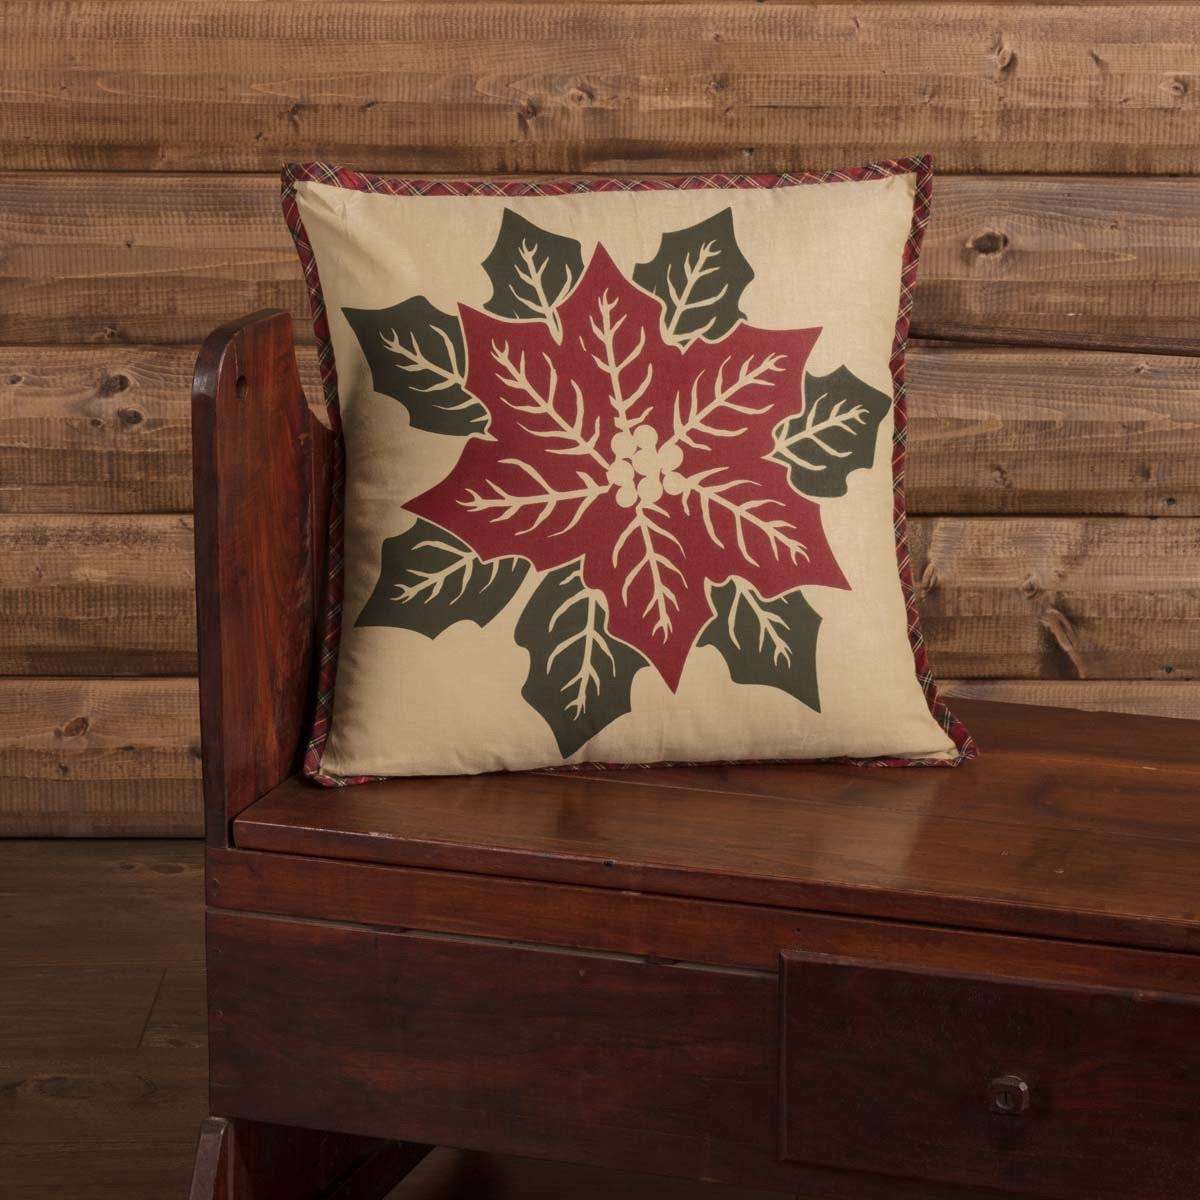 National Quilt Museum Poinsettia Block Pillow 18" Khaki, Poinsettia Red, Deep Green VHC Brands - The Fox Decor